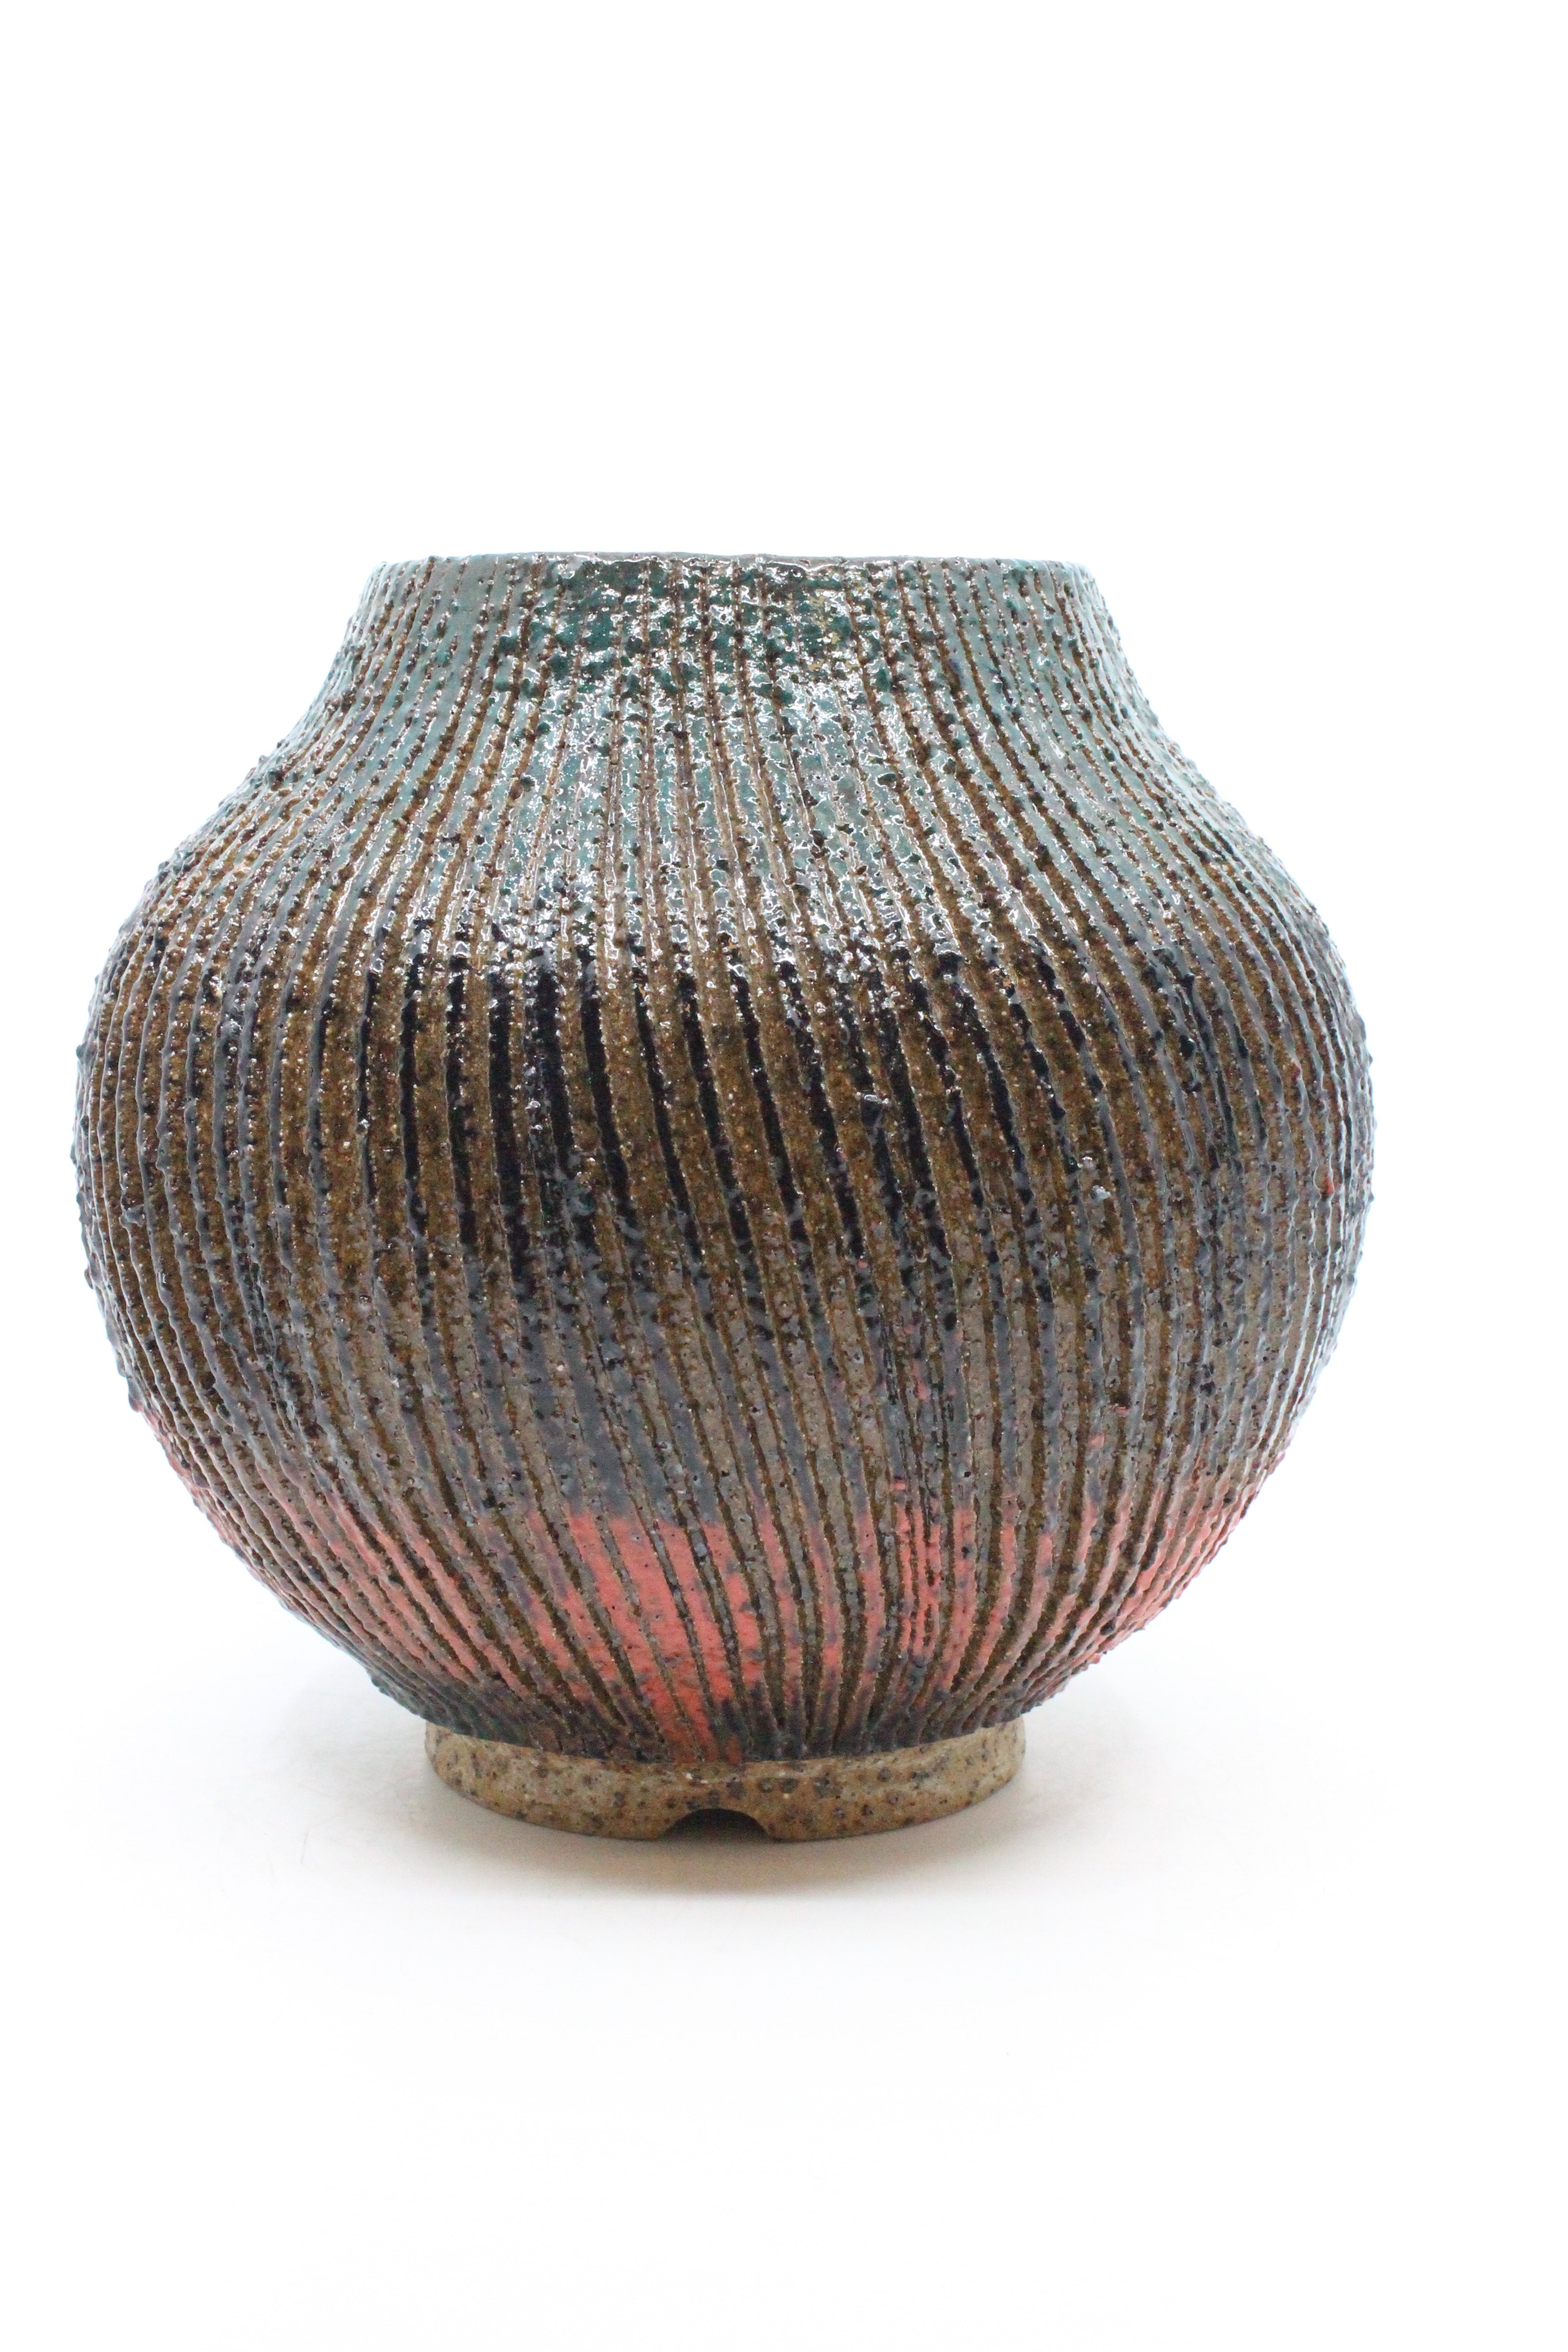 Textured Twist Vase - Large Ceramics Peter Scott 